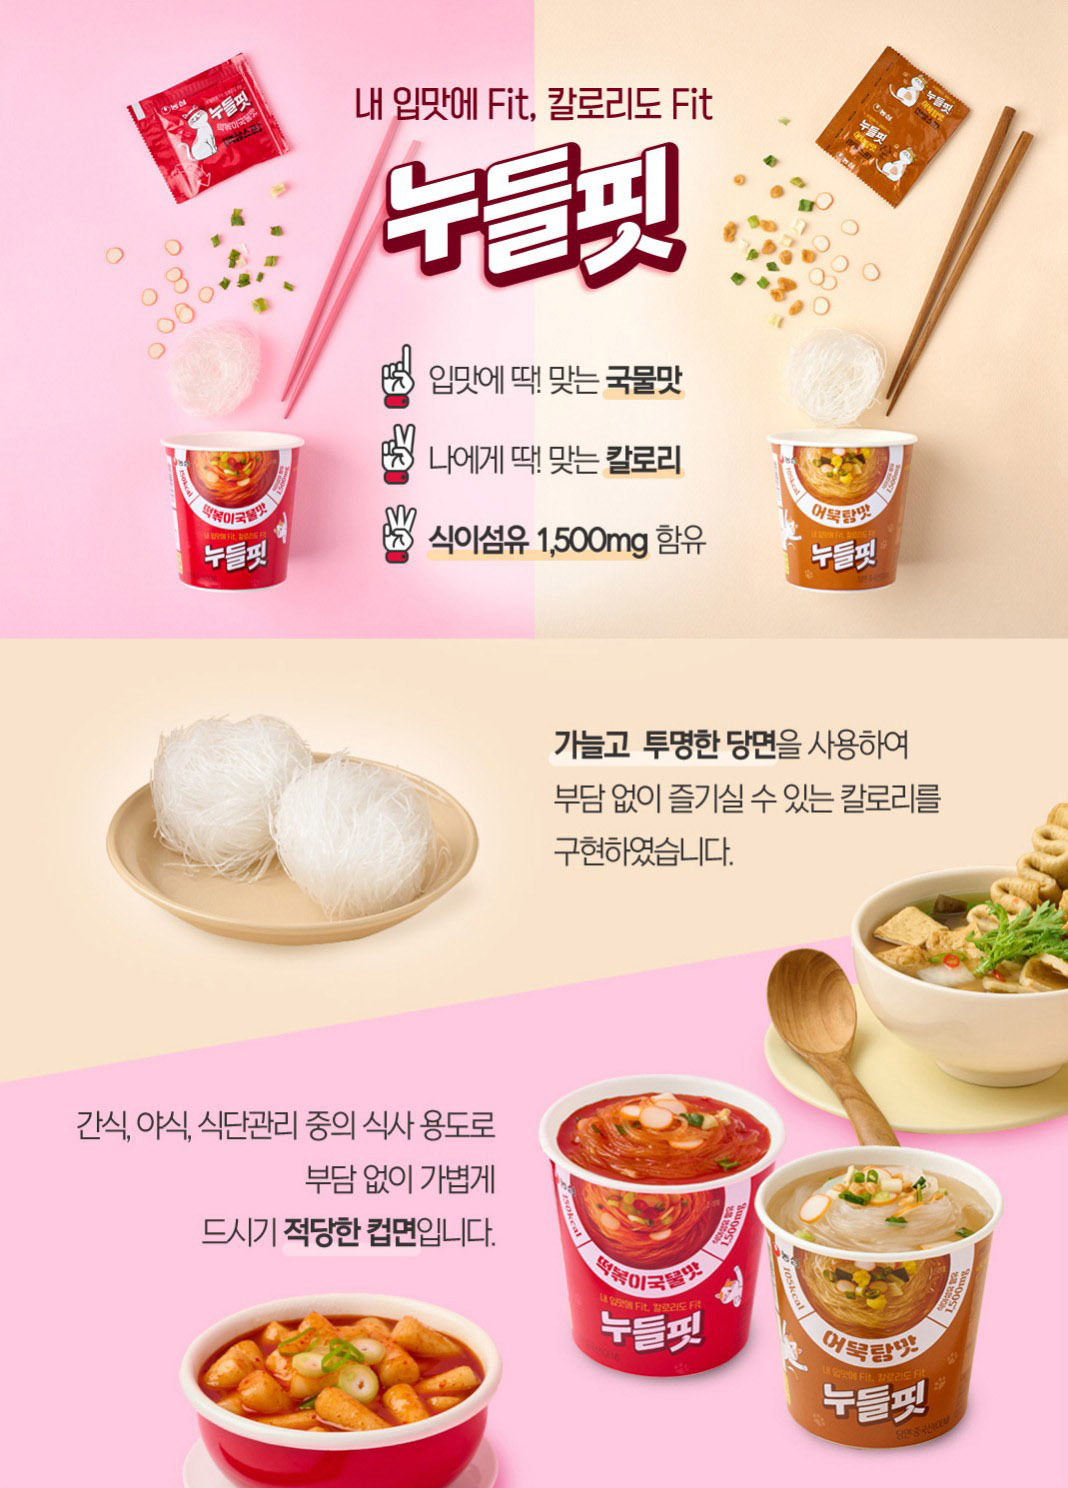 韓國食品-[Nongshim] Noodlefit (Fish Cake Soup) 31.2g